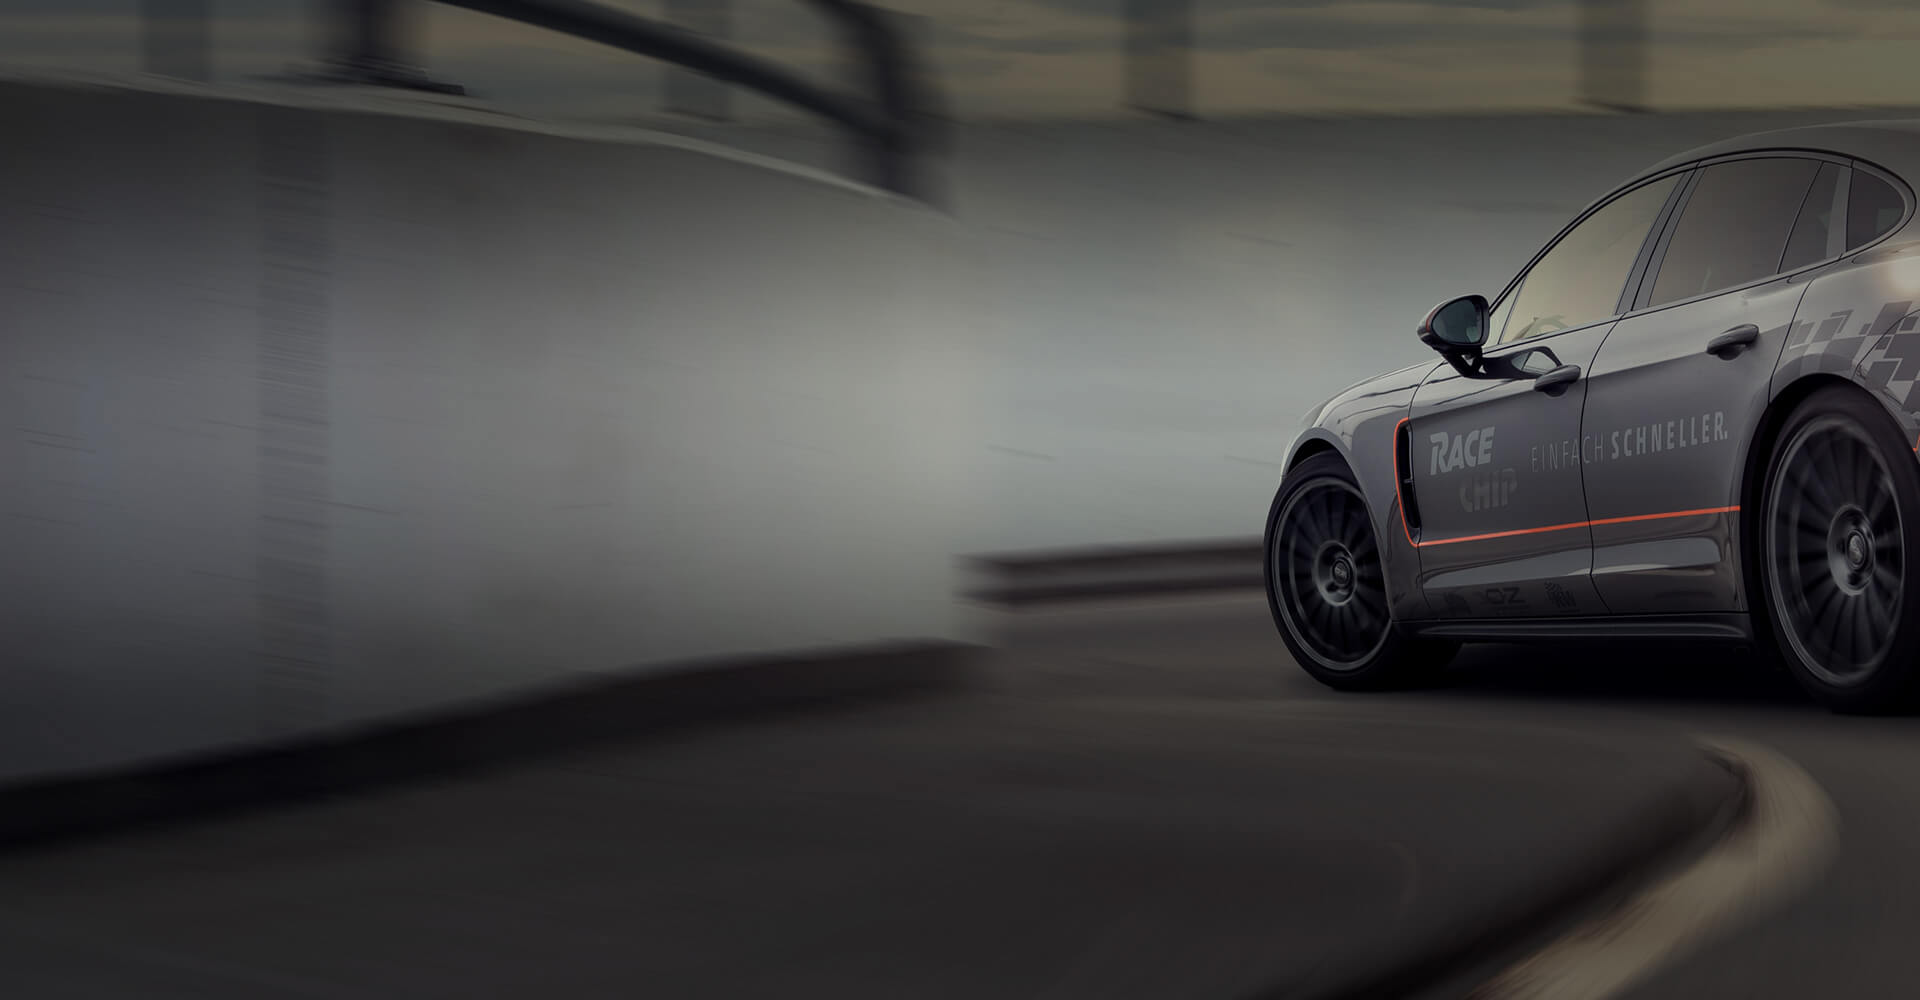 SALE／75%OFF】 レースチップ GTS ブラック RaceChip Black マクラーレン 570GT V8 3.8L  570PS 600Nm 106PS 194Nm TMワークス